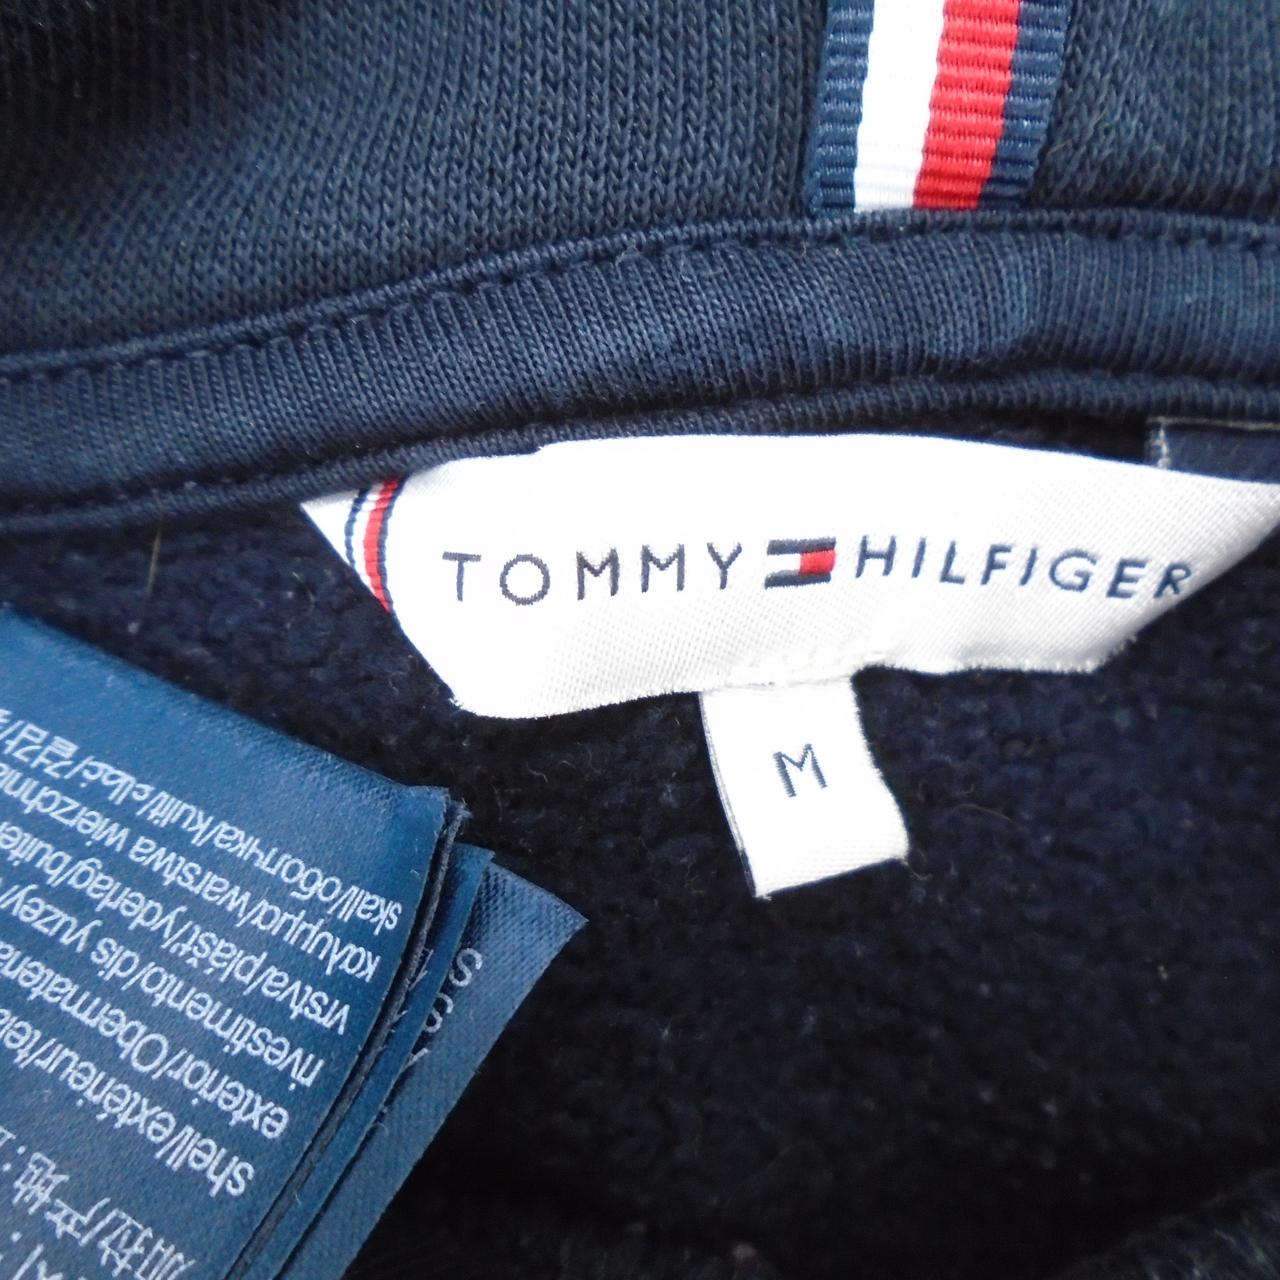 Damen Sweatshirt Tommy Hilfiger. Dunkelblau. M. Gebraucht. Sehr gut